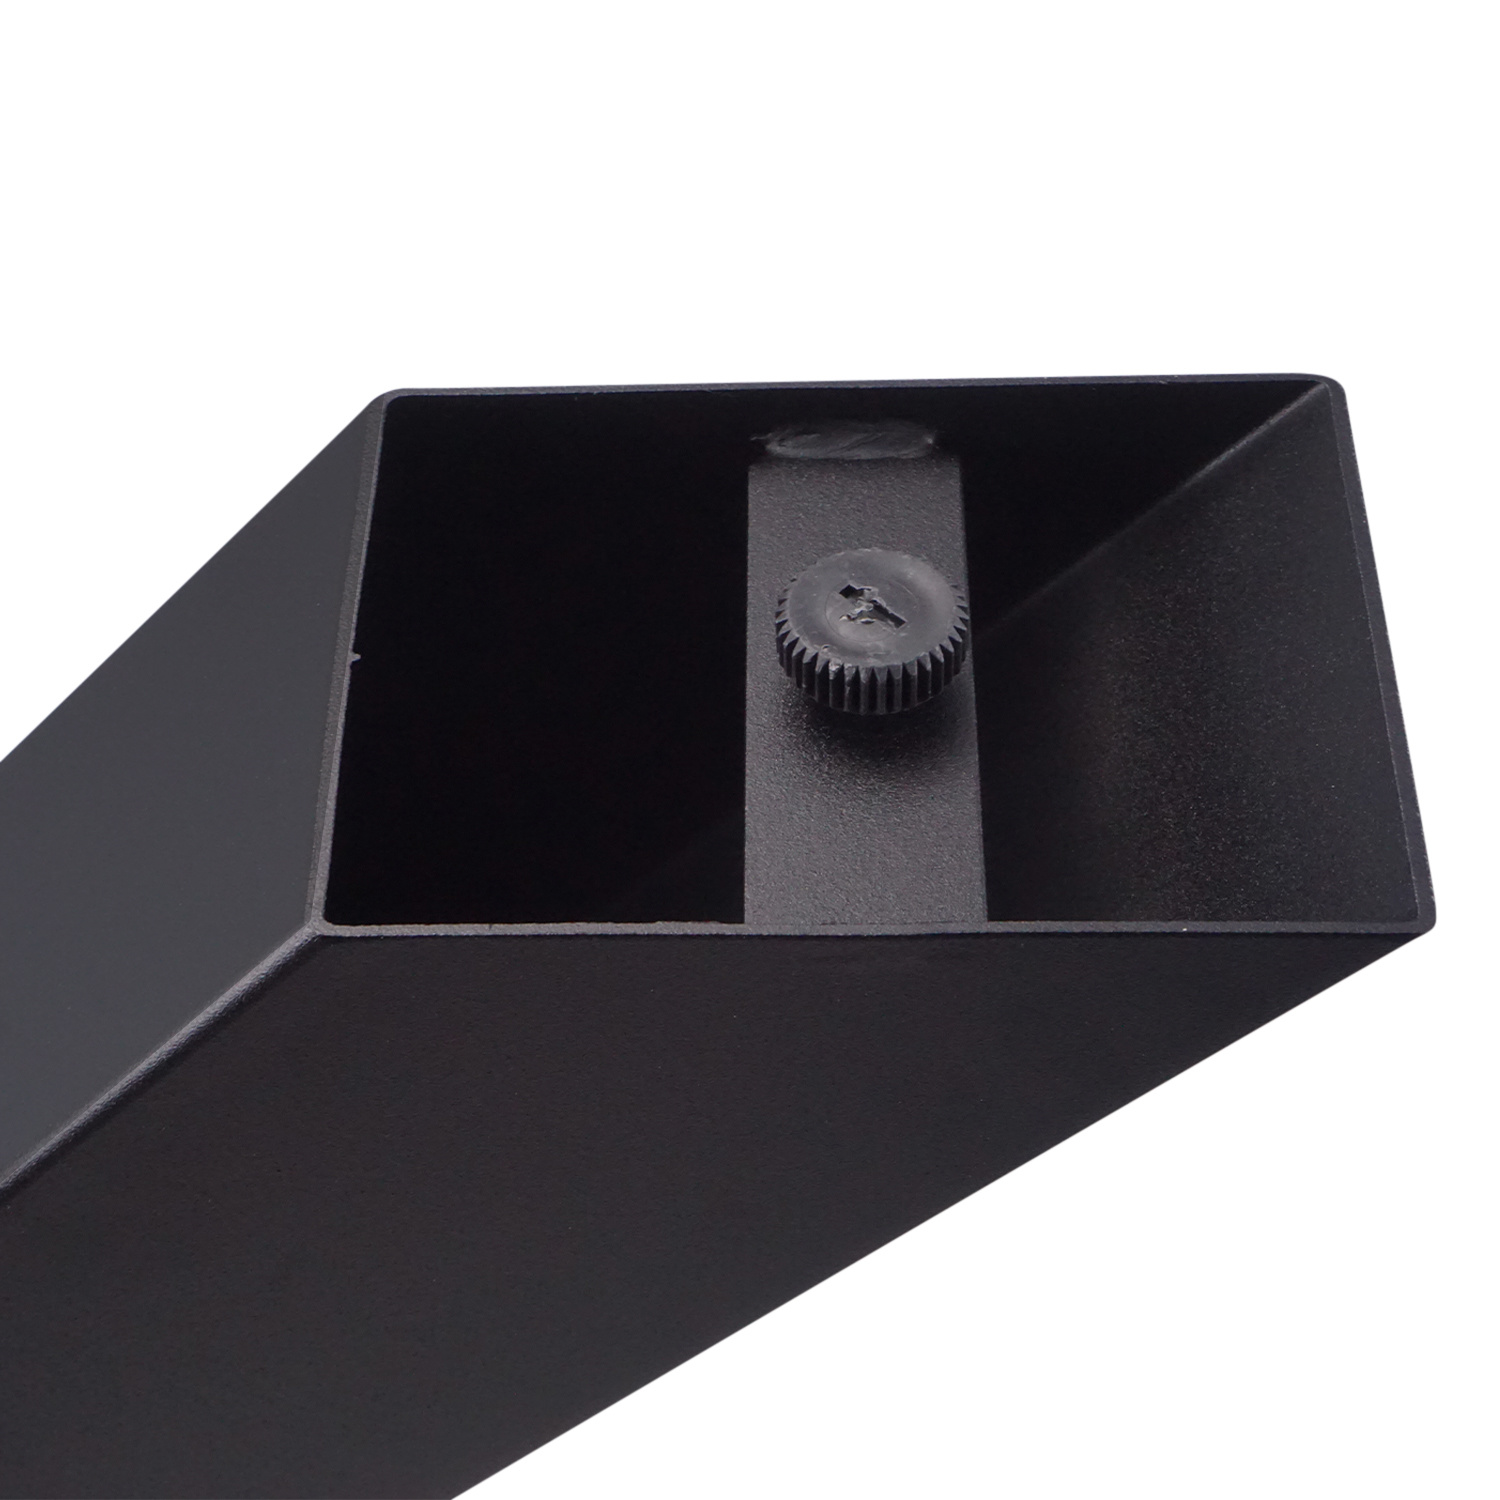  Tischbeine X-Stern Metall SET (2 Stück) - 10x10 cm - 78 cm breit - 72 cm hoch - X-form Tischkufen / Tischgestell beschichtet - Schwarz